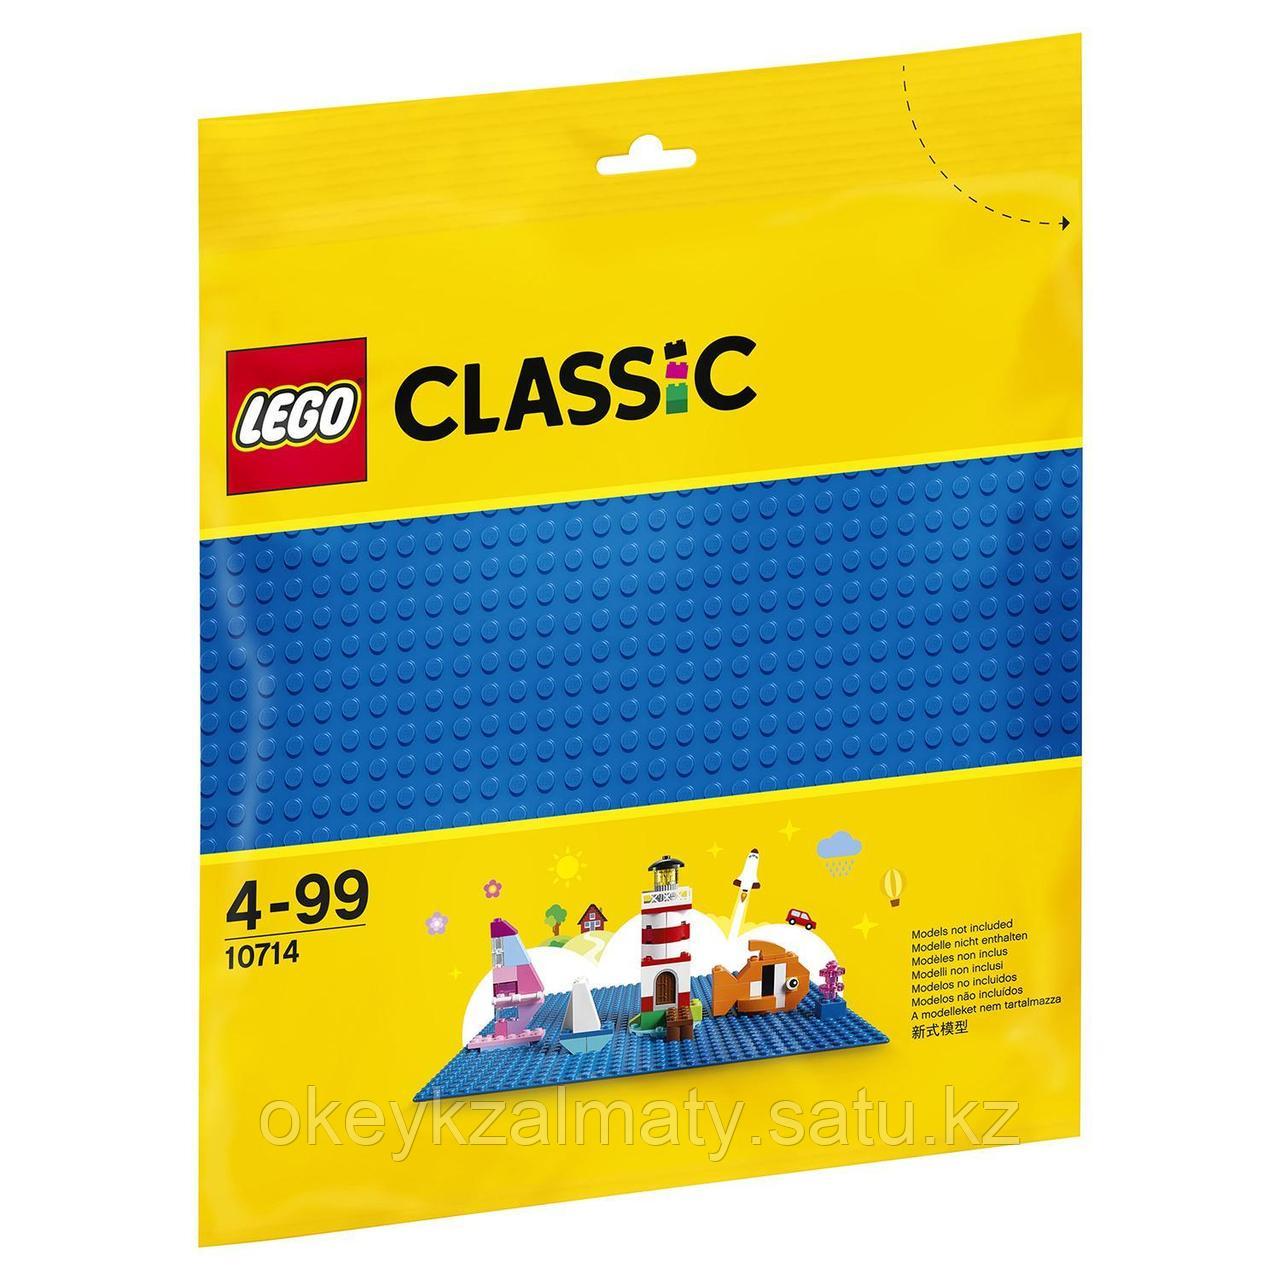 LEGO Classic: Базовая строительная пластина синего цвета 10714